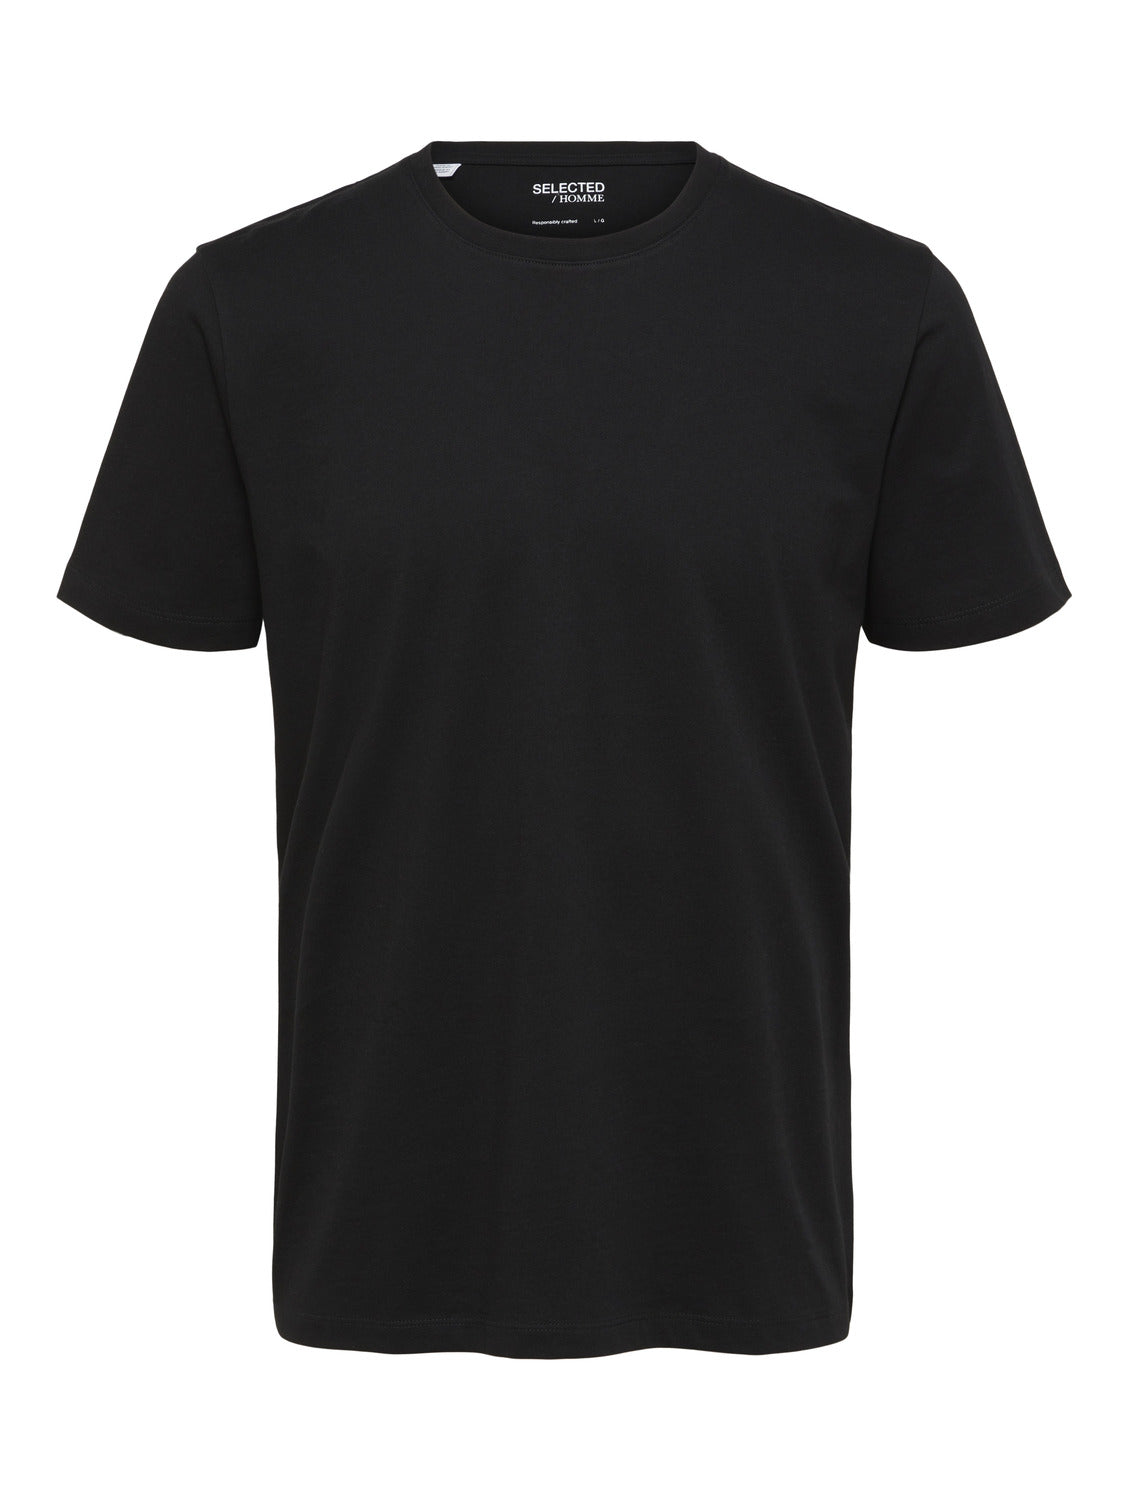 SLHASPEN T-Shirt - Black